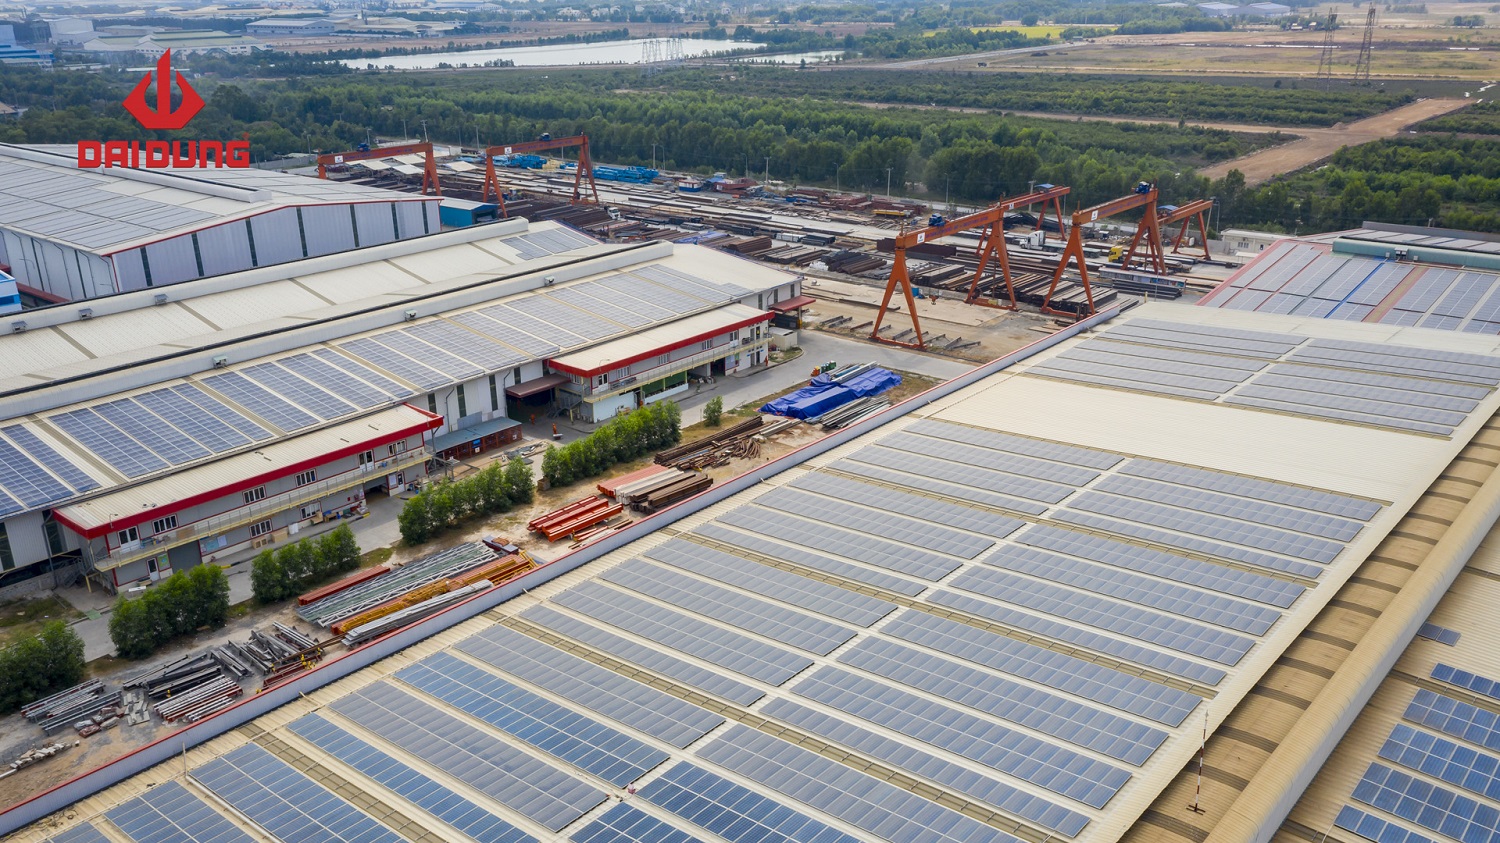 Hệ thống điện năng lượng mặt trời tại nhà máy An Hạ đáp ứng 65% nhu cầu sử dụng điện